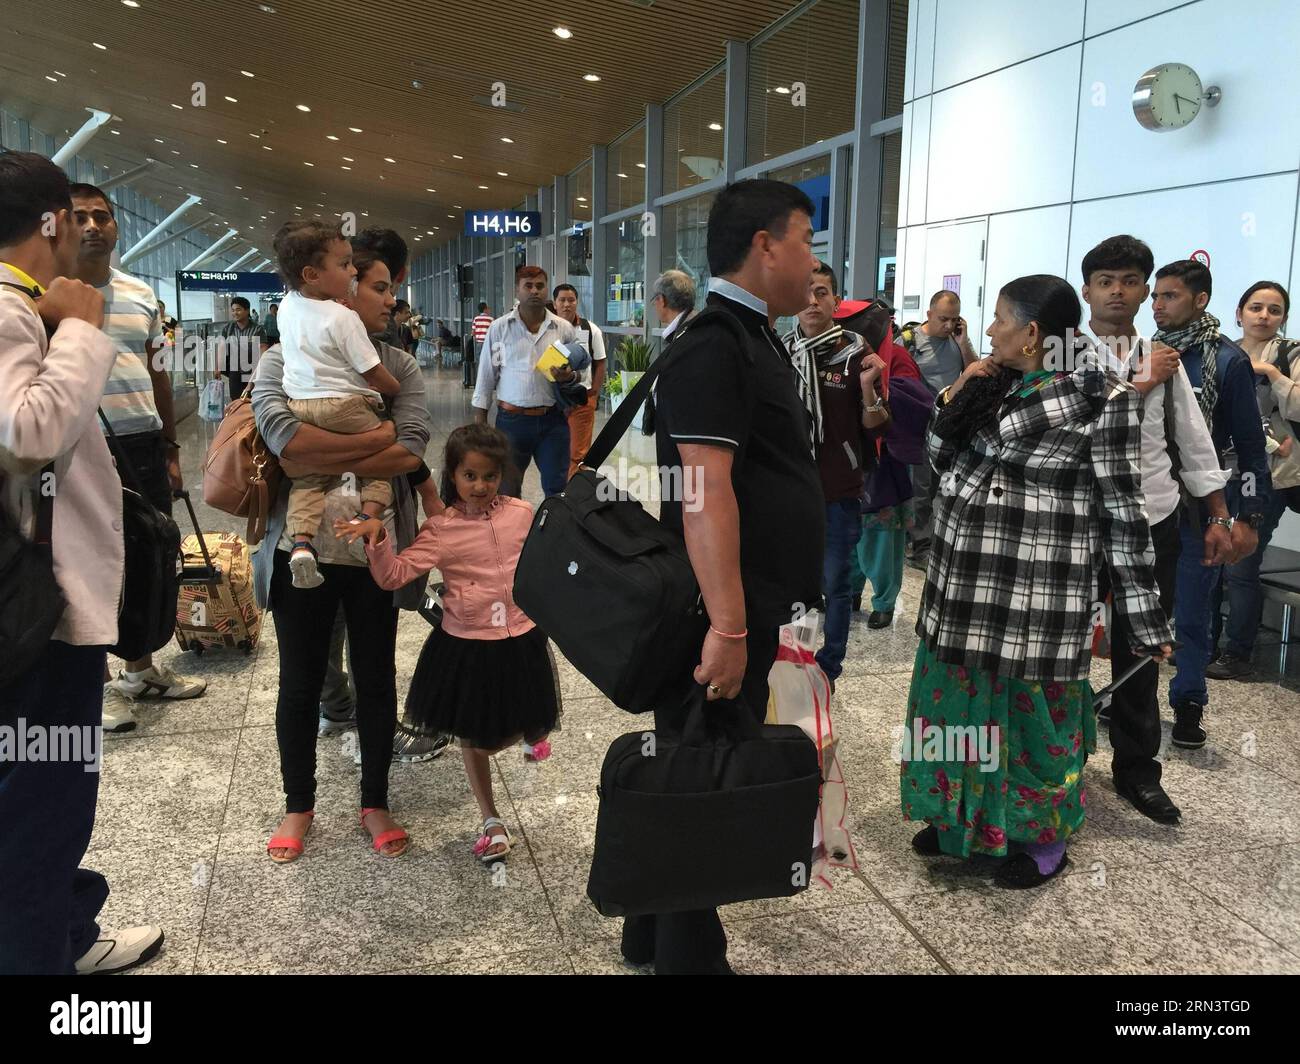 (150426) -- KUALA LUMPUR, le 26 avril 2015 -- des passagers népalais attendent un vol de retour au Népal à l'aéroport international de Kuala Lumpur à Kuala Lumpur, capitale de la Malaisie, le 26 avril 2015. Un total de 2 152 personnes ont été tuées et environ 5 000 autres ont été inhumées dans un puissant tremblement de terre qui a frappé le Népal samedi midi, a déclaré dimanche le porte-parole de la police nationale Kamal Singh Bam. ) MALAISIE-KUALA LUMPUR-NÉPAL-EARTHQUAKE-PASSENGERS QinxQing PUBLICATIONxNOTxINxCHN Kuala Lumpur avril 26 2015 des passagers népalais attendent un vol de retour au Népal À l'aéroport international de Kuala Lumpur à Kuala Lumpur Banque D'Images